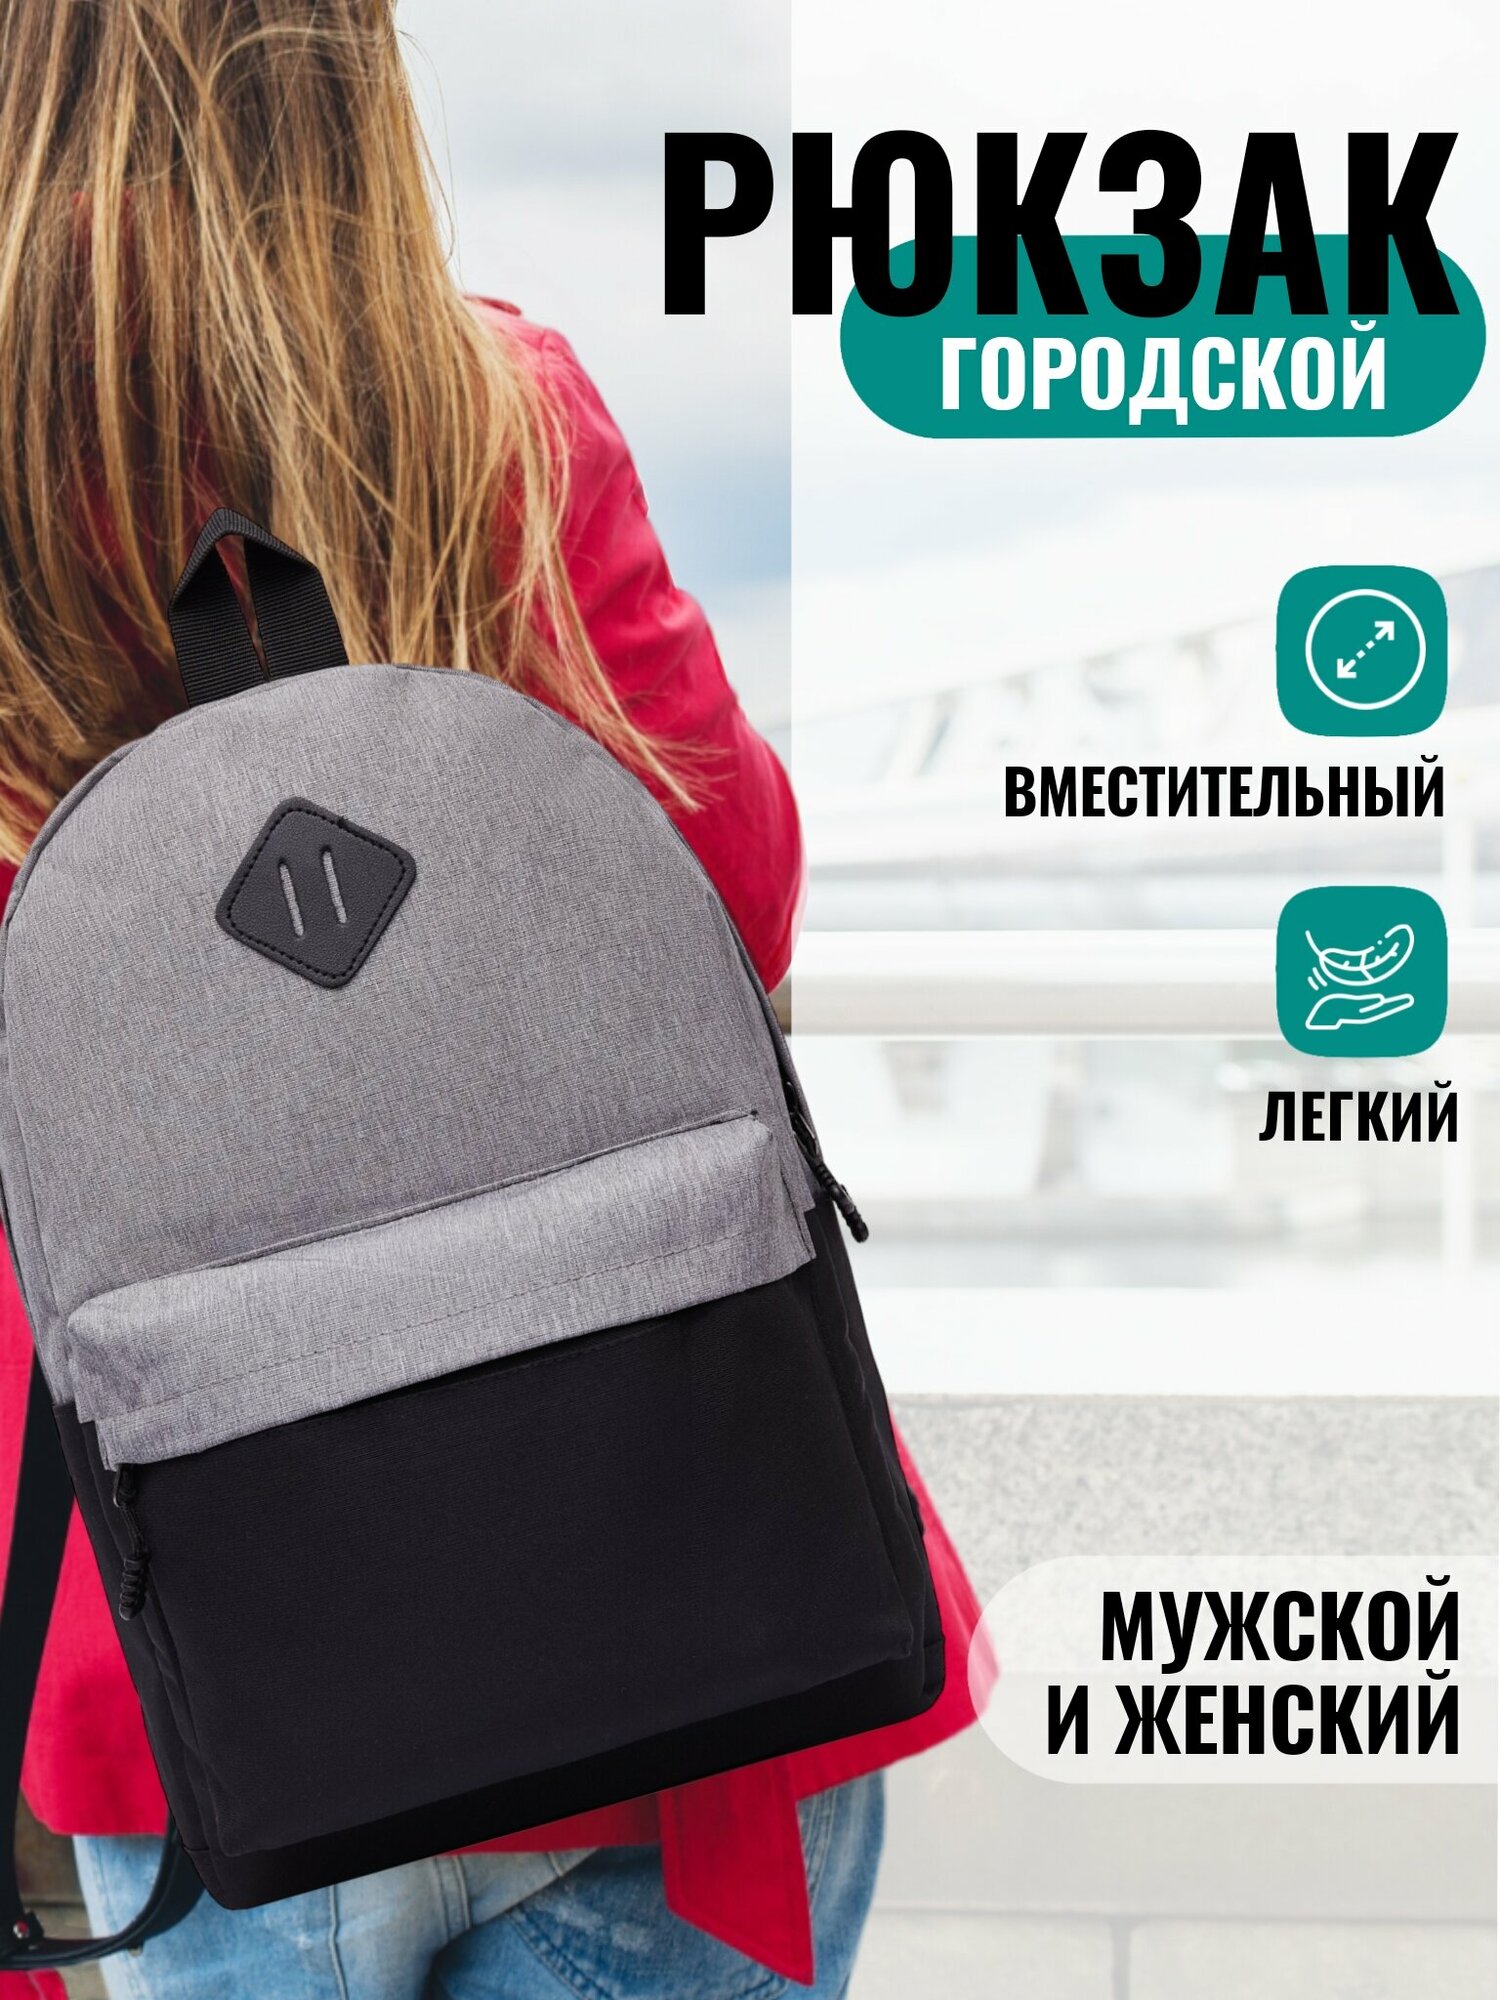 Рюкзак унисекс NX, для девочек и мальчиков, для прогулки и города школьный взрослый современный дизайн стильный2